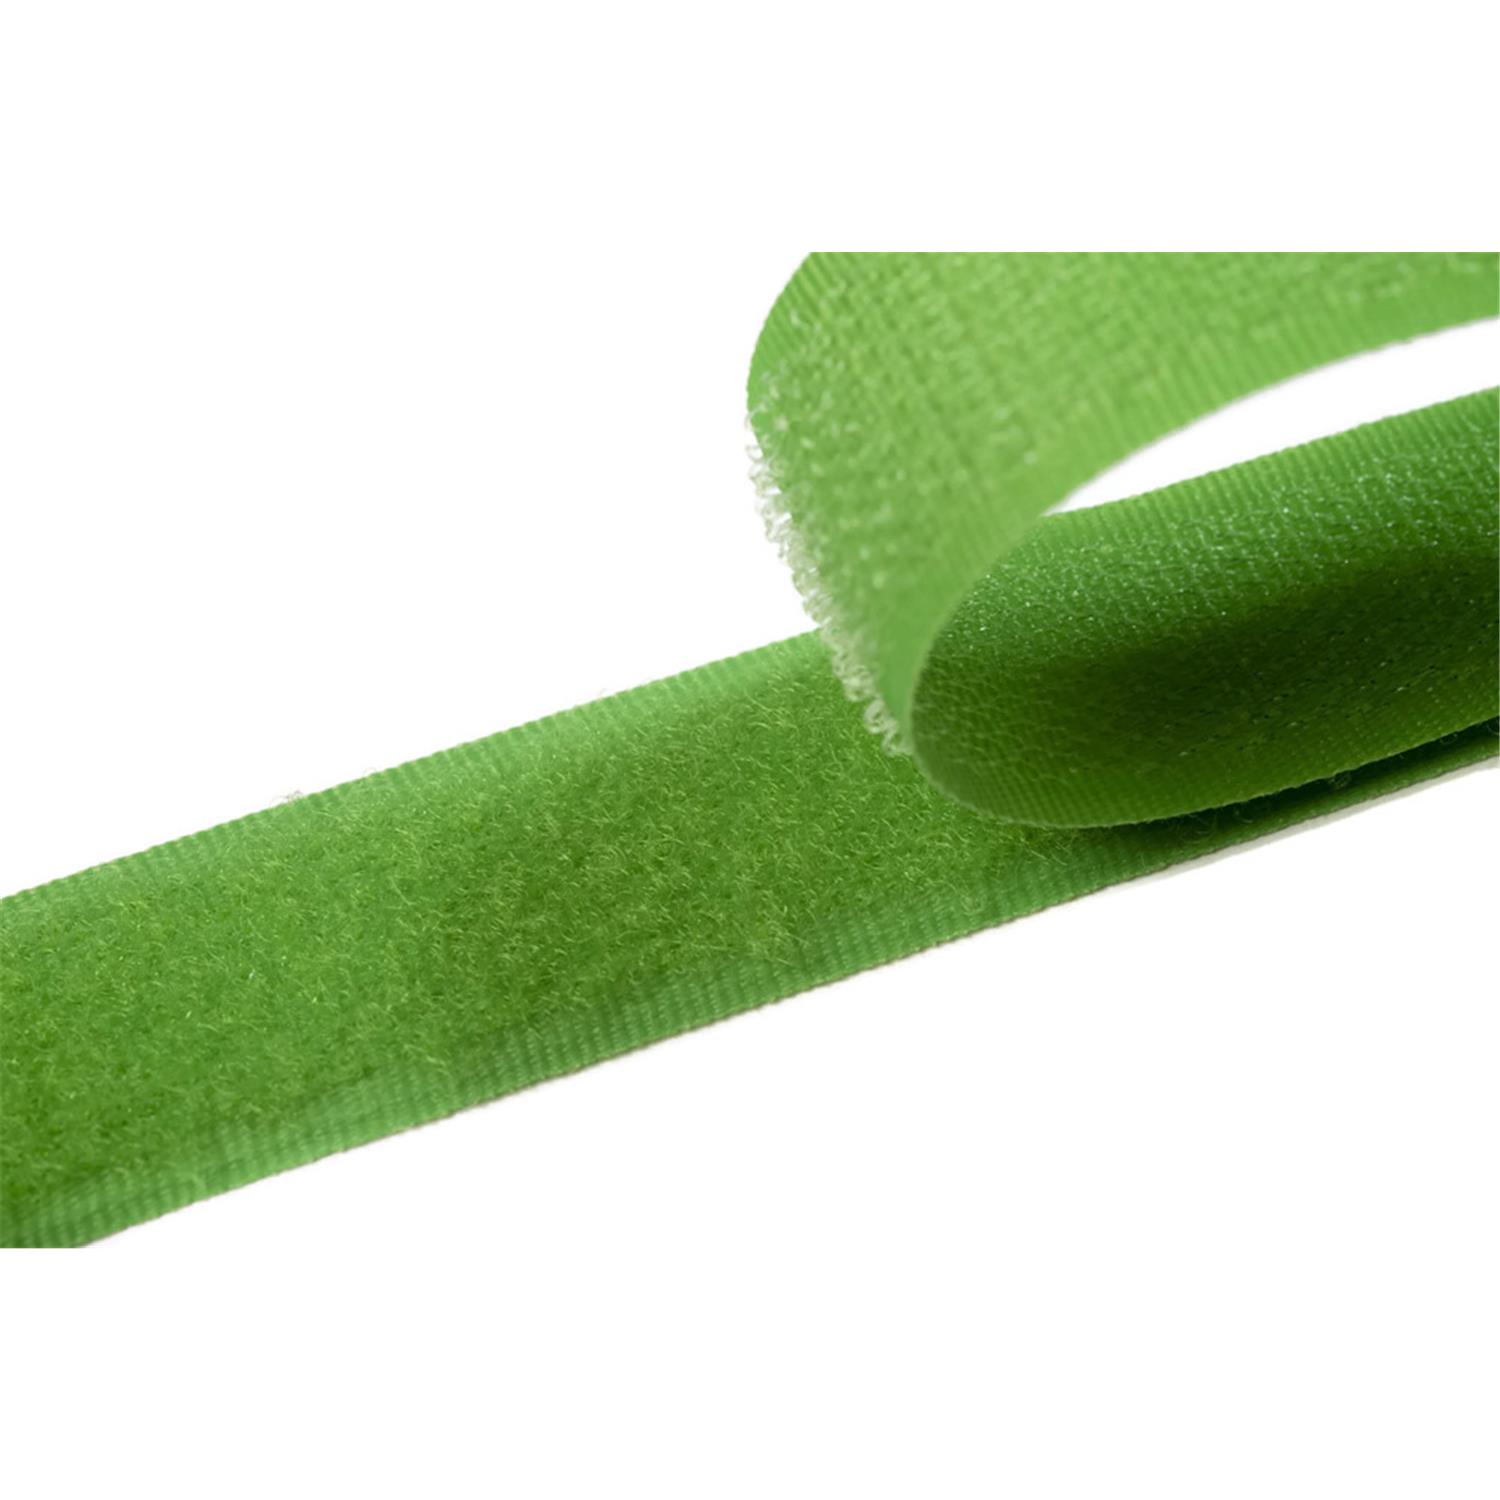 Klettband zum aufnähen, 25 mm, frühlingsgrün #08 4 Meter